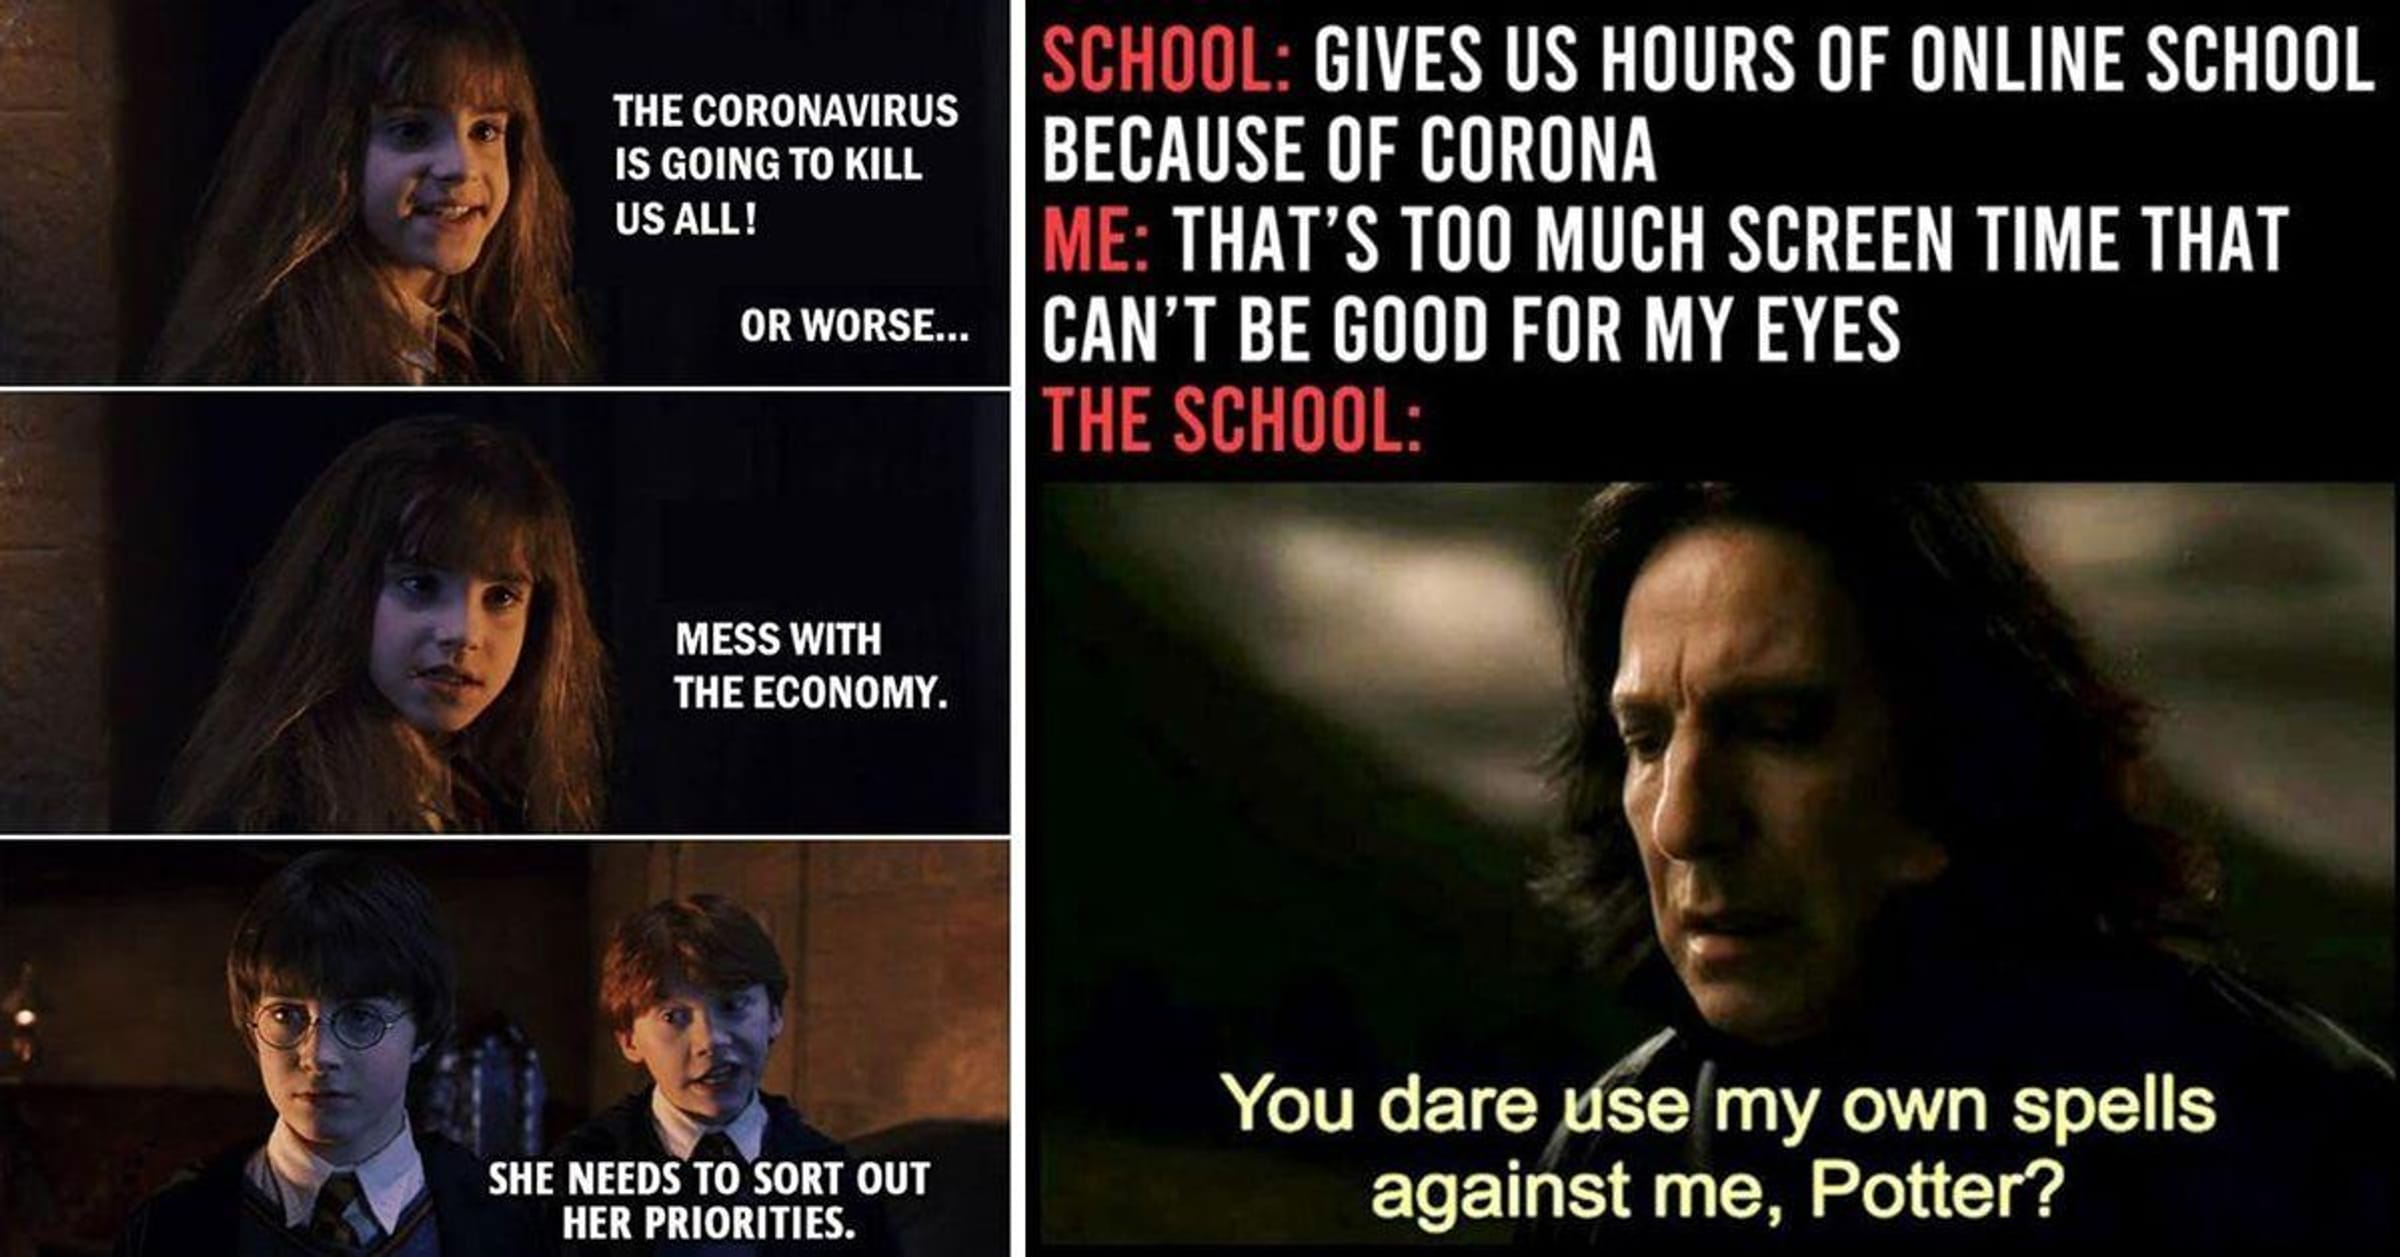 Harry Potter Memes - How Draco really said it.